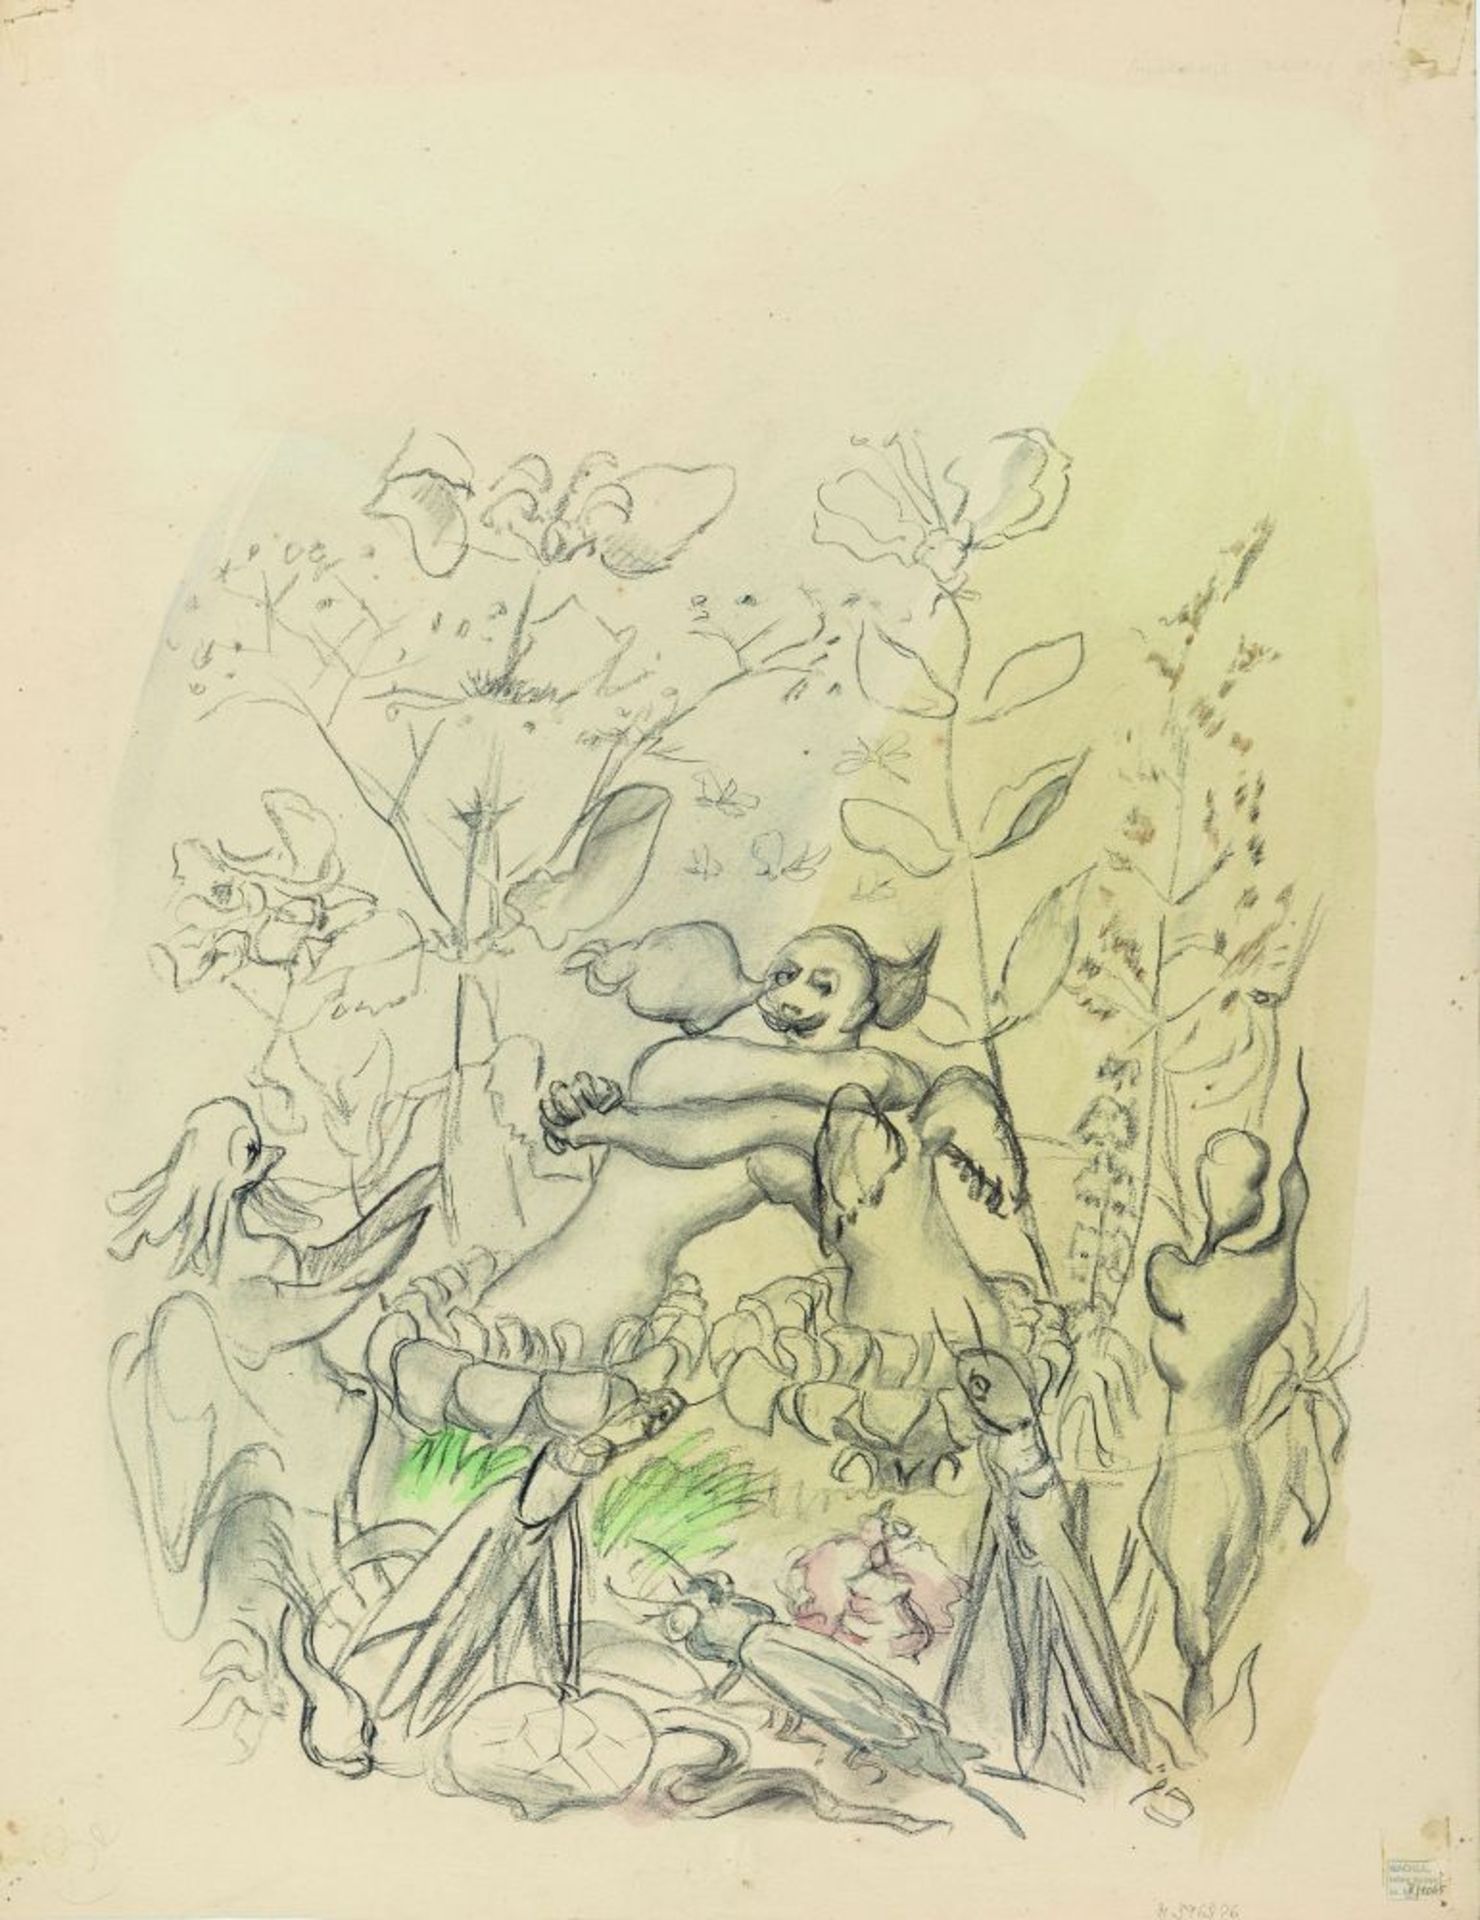 Ludwig Meidner. Apokalyptische Komposition. Verso: Insektenszene.1940-1950. Aquarell und schwarze Kr